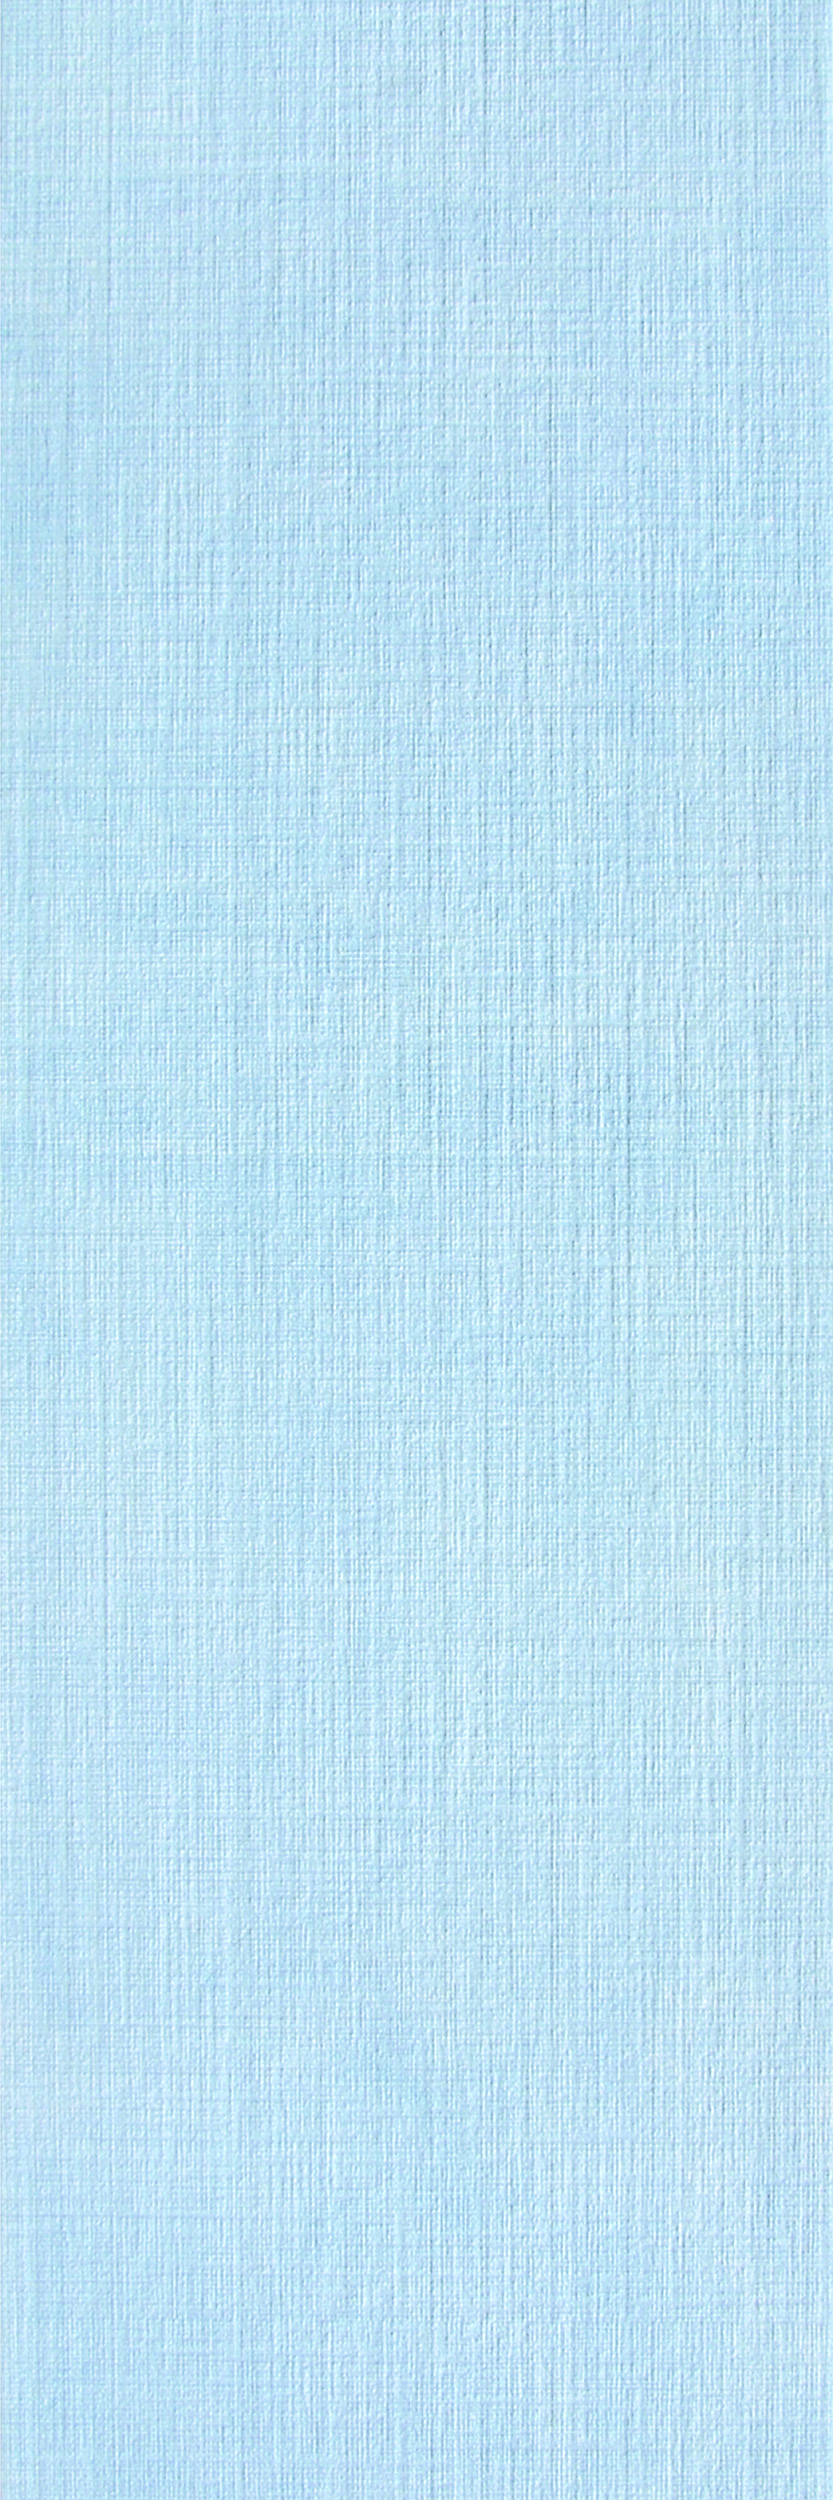 Плитка настенная Alisia/Алисия  blue wall 01 (Gracia Ceramica)